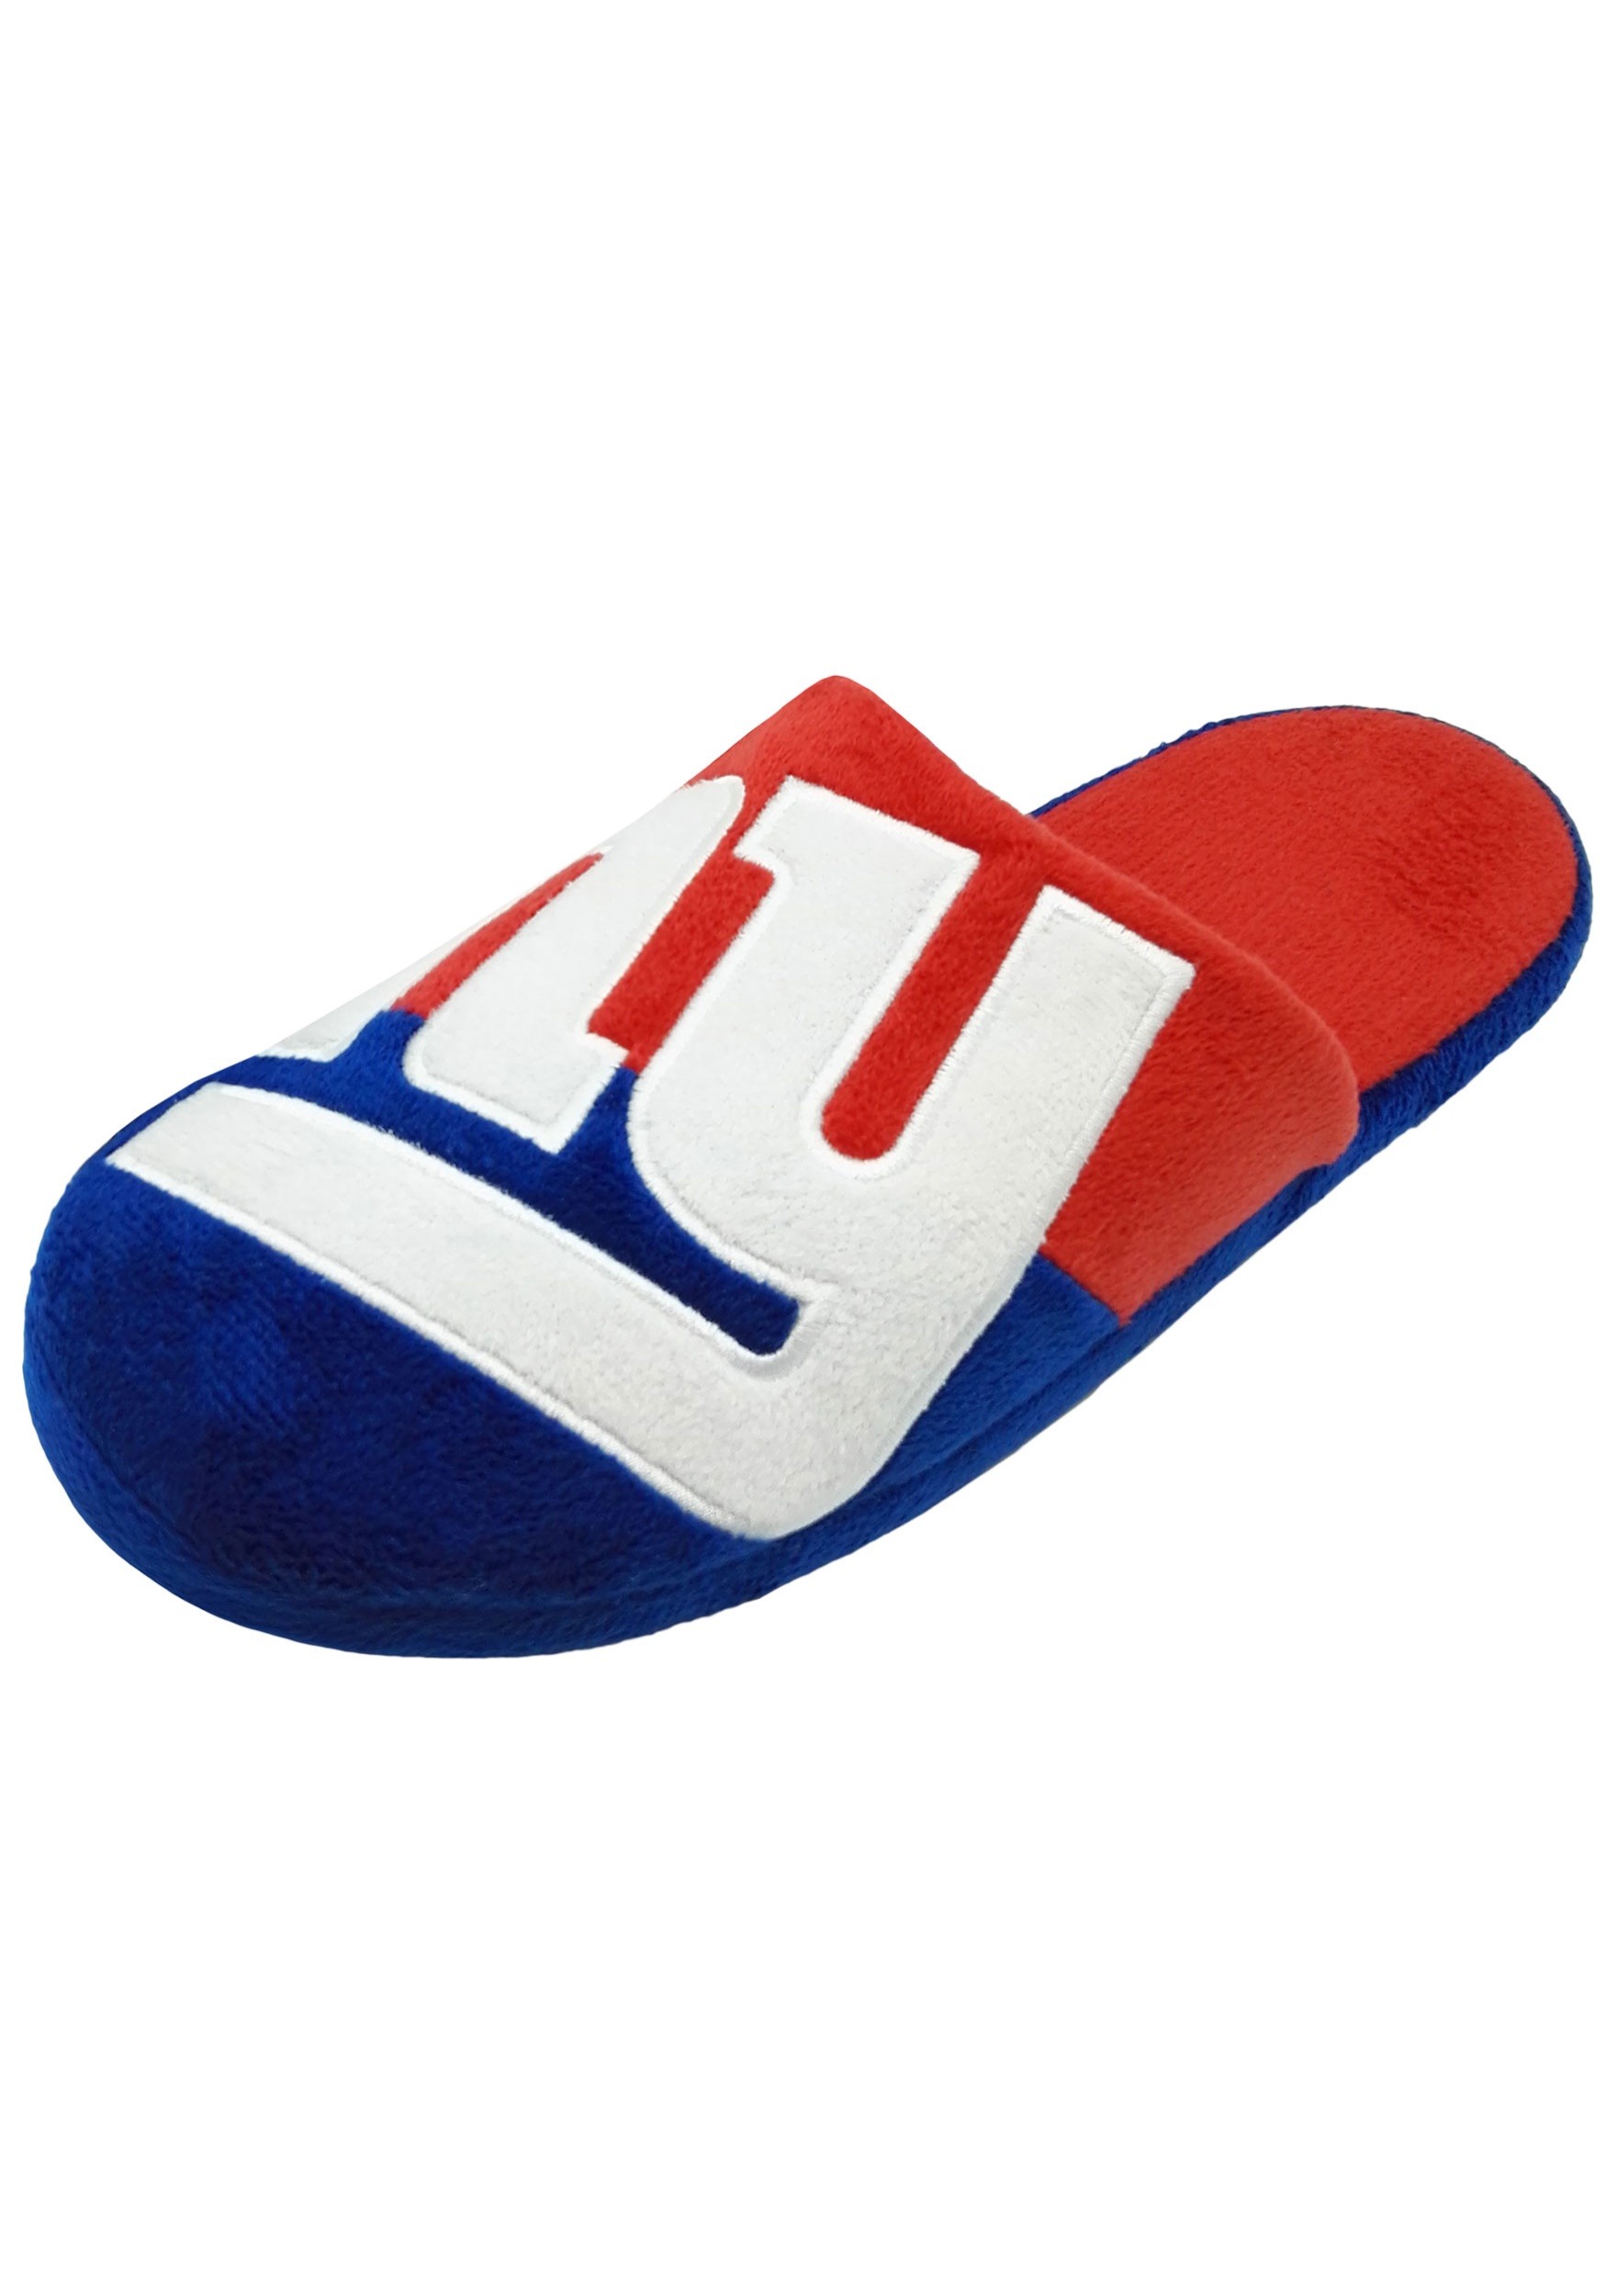 New York Giants Colorblock Slide Slippers